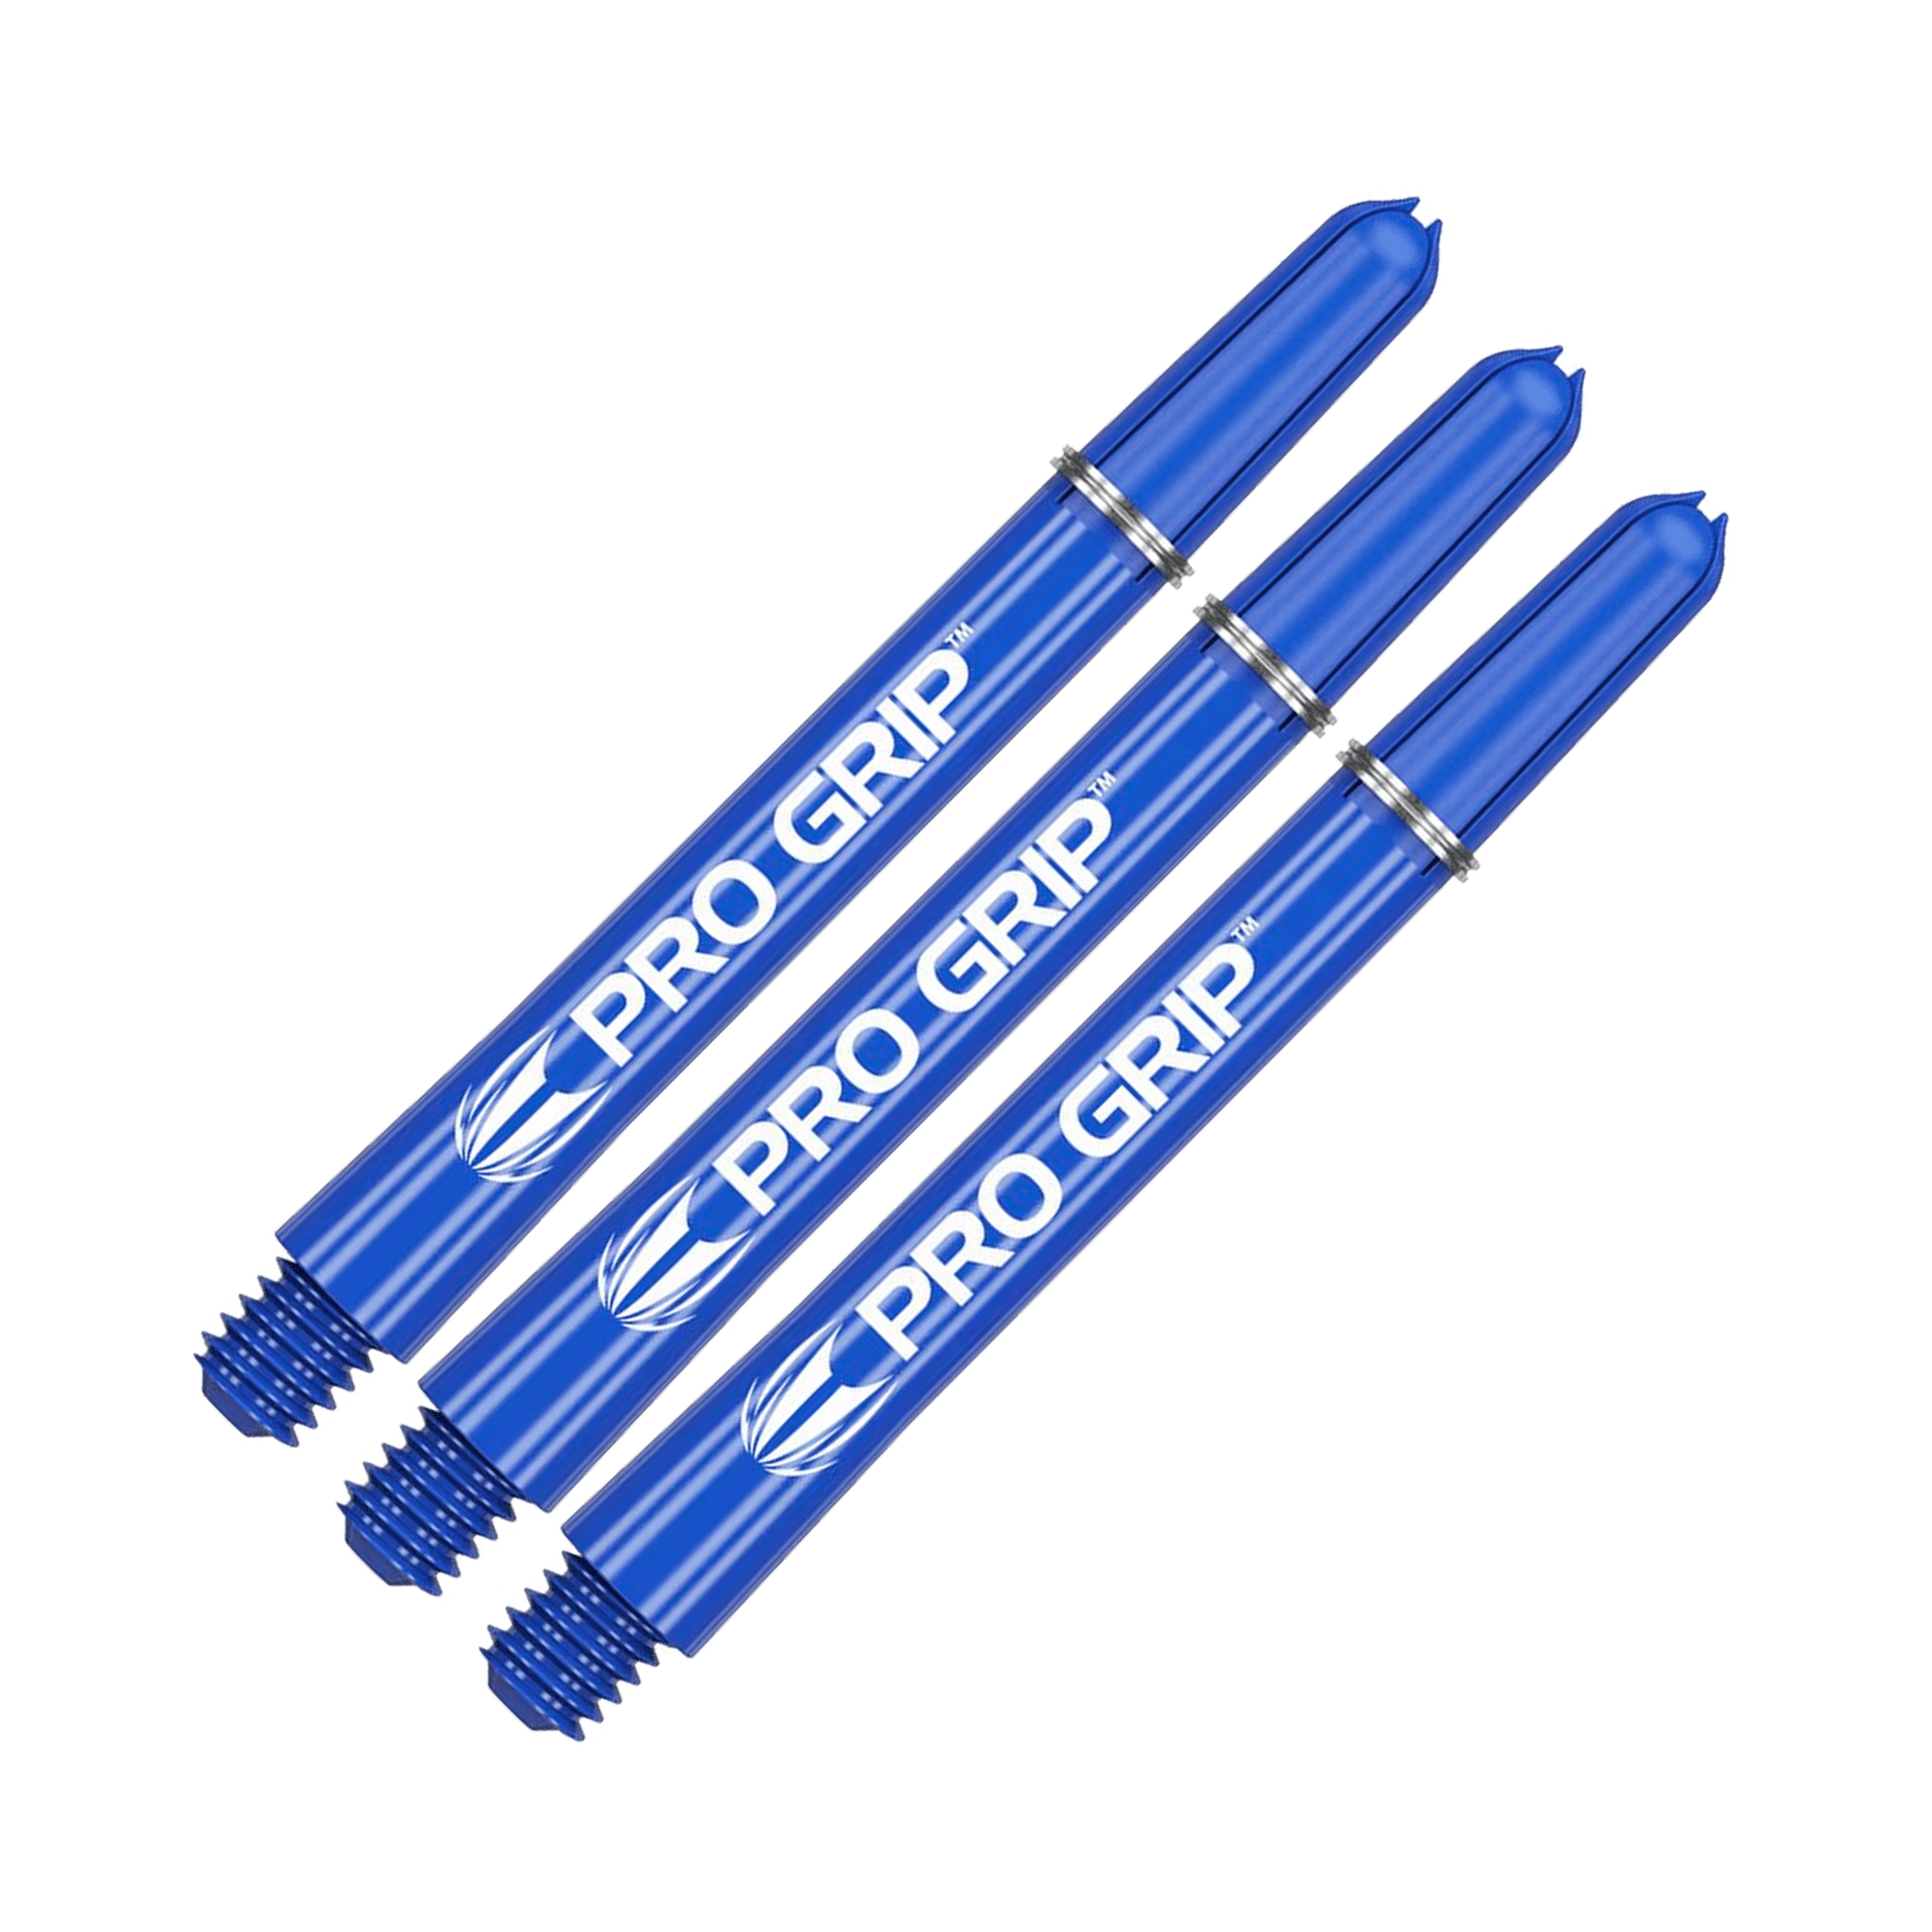 Target Pro Grip Multi Pack - Nylon Dart Shafts (3 Sets) Blue / Medium (48mm) Shafts